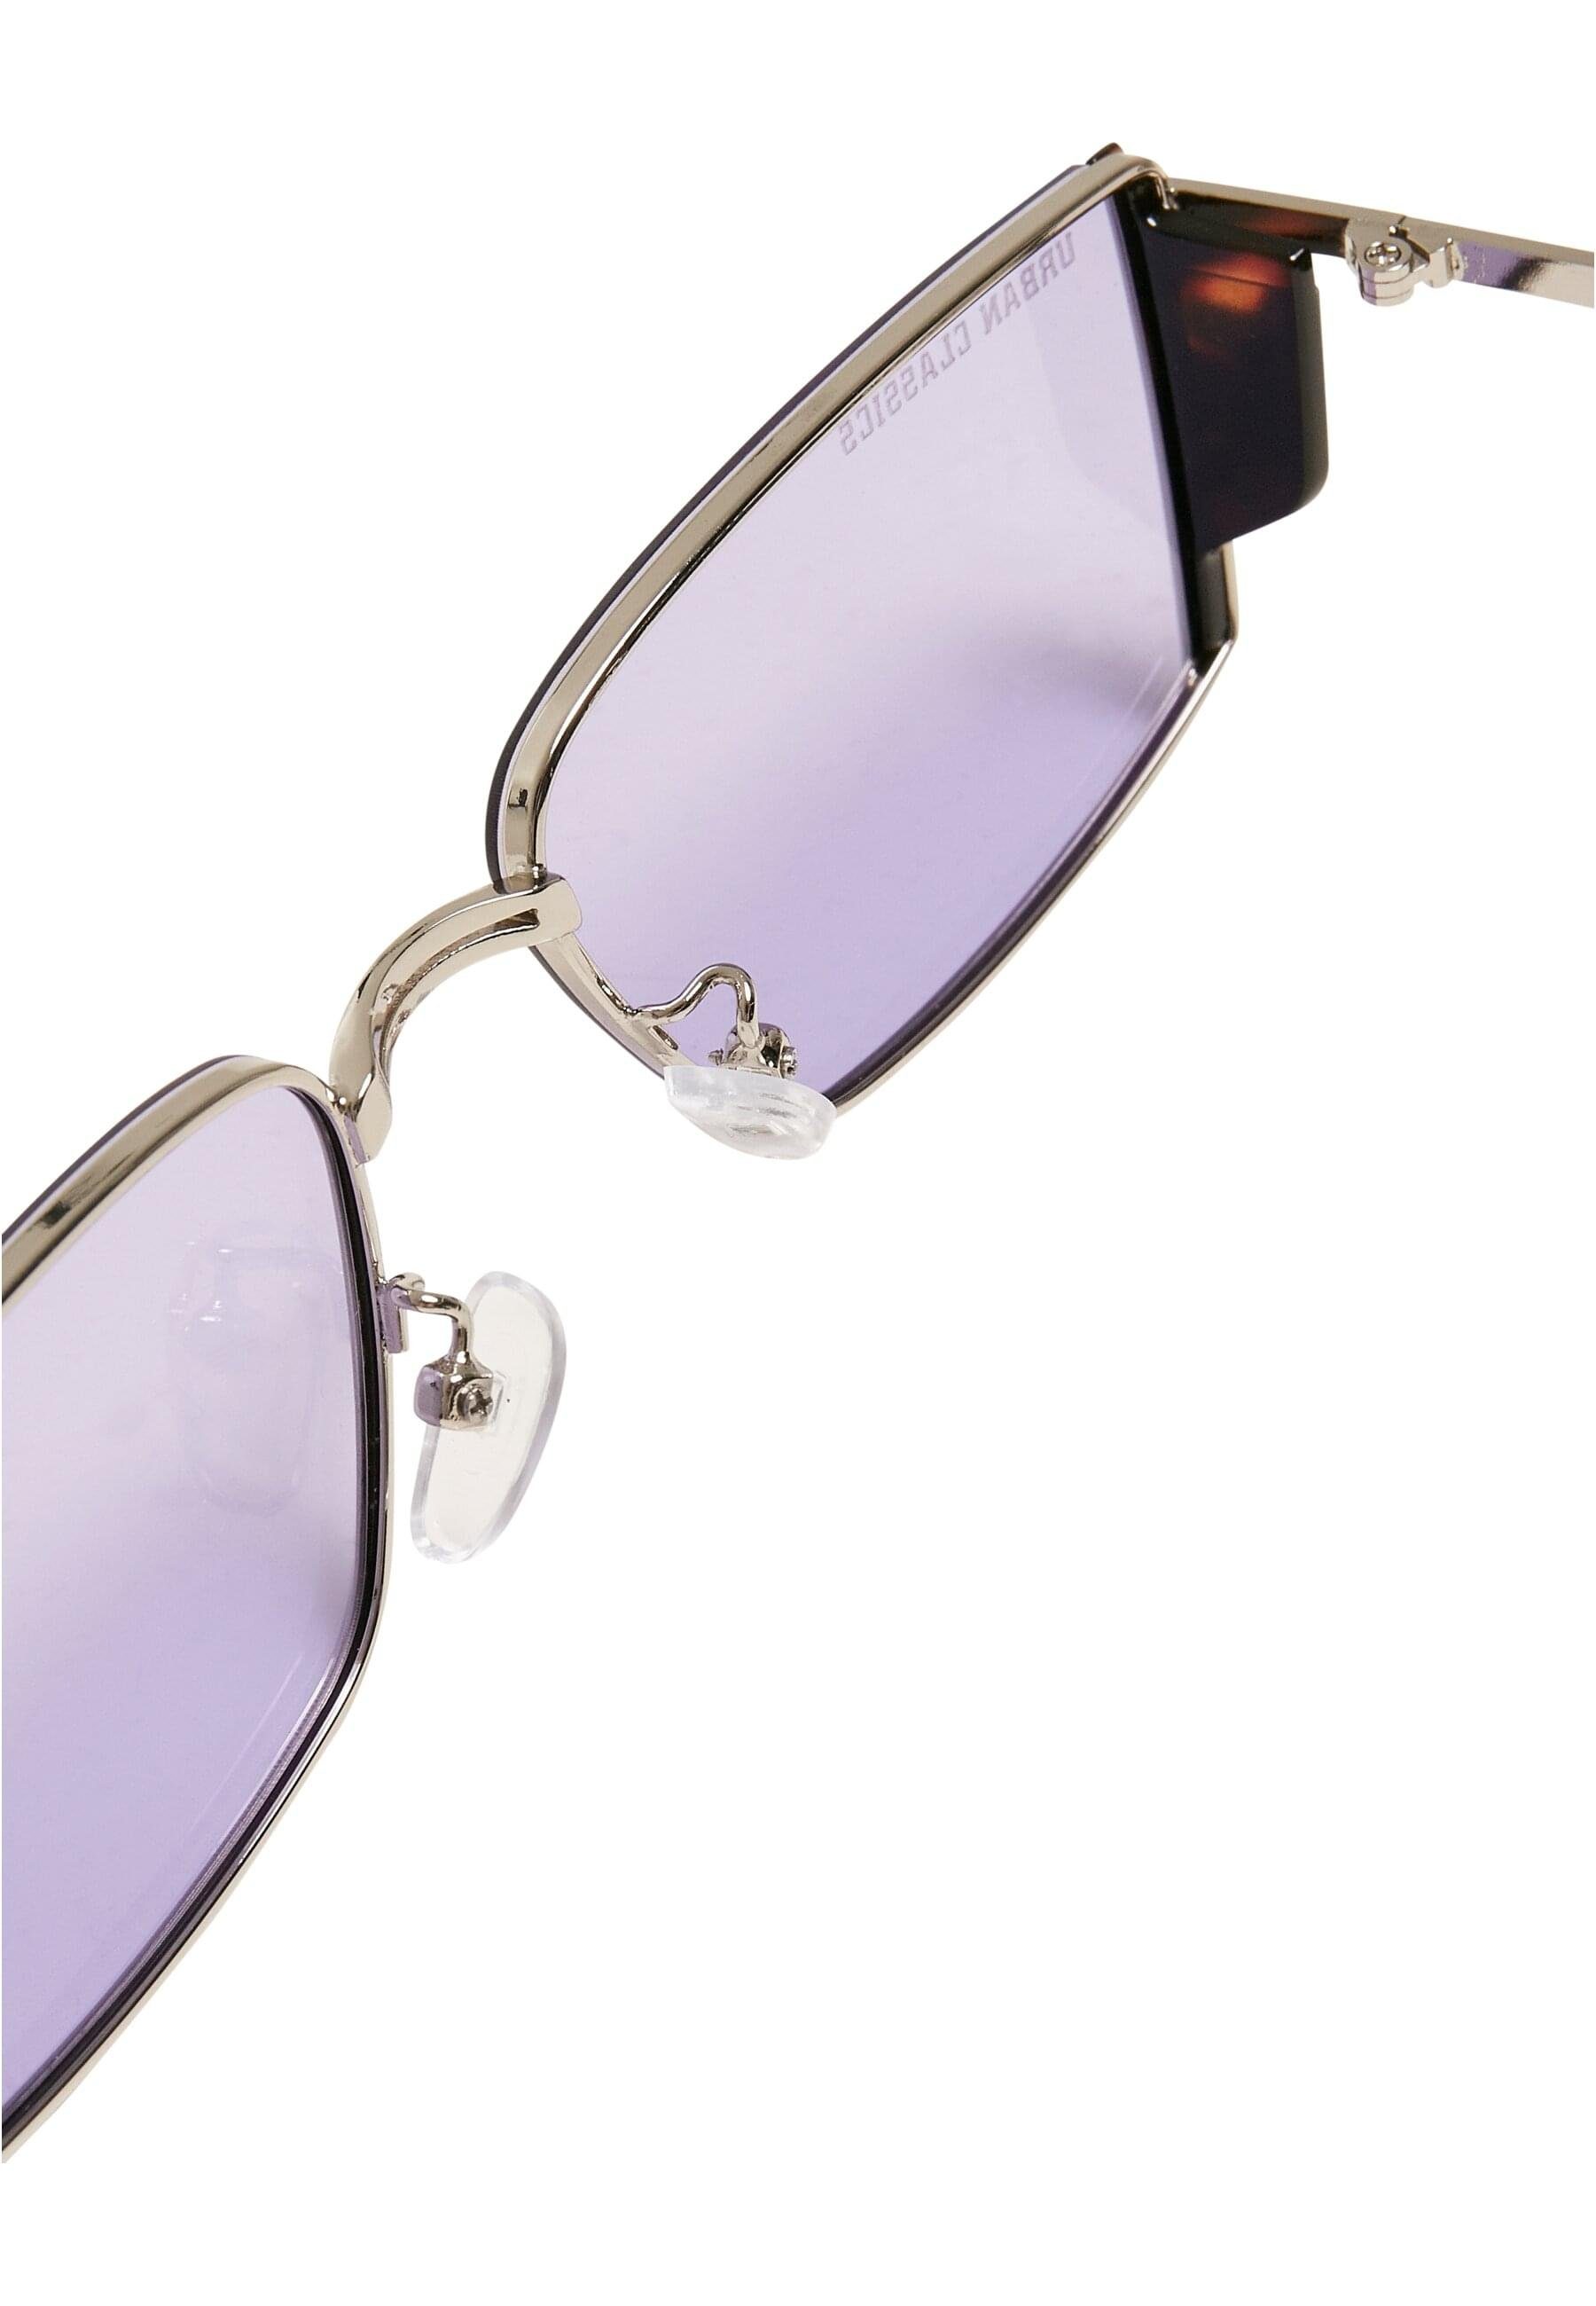 URBAN CLASSICS Sonnenbrille Unisex Sunglasses Ohio lilac/silver